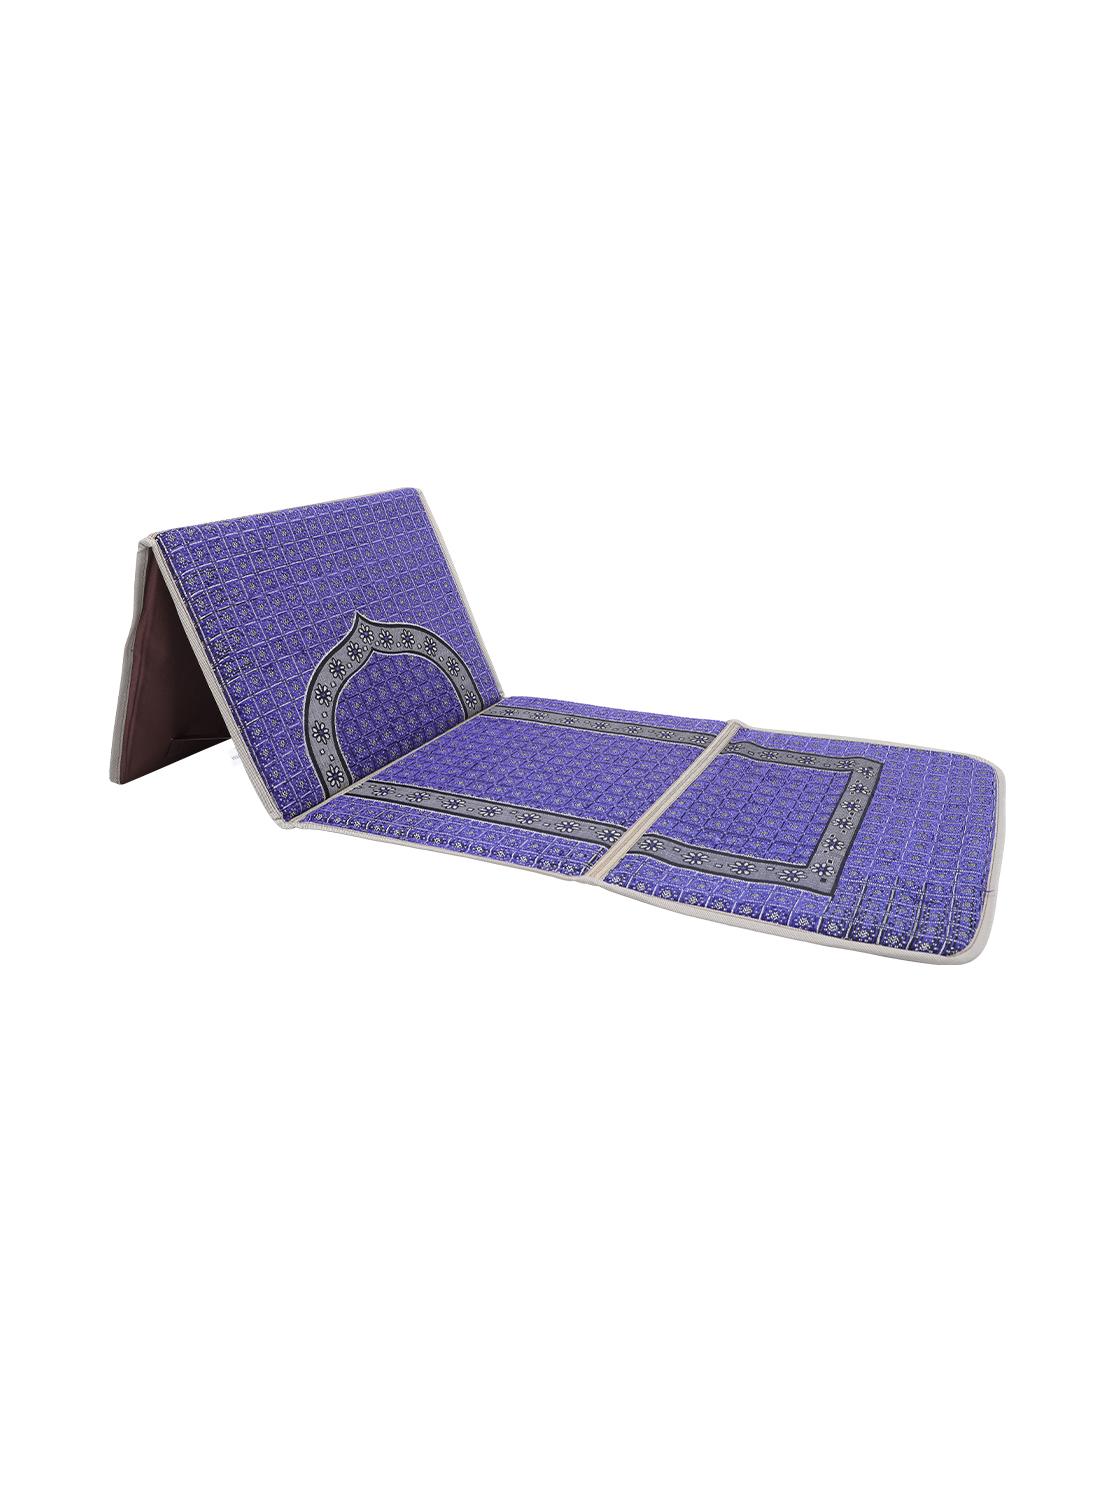 سجادة صلاة كرسي قابلة للطي نور أزرق NOOR-1 Foldable Prayer Mat and Backrest